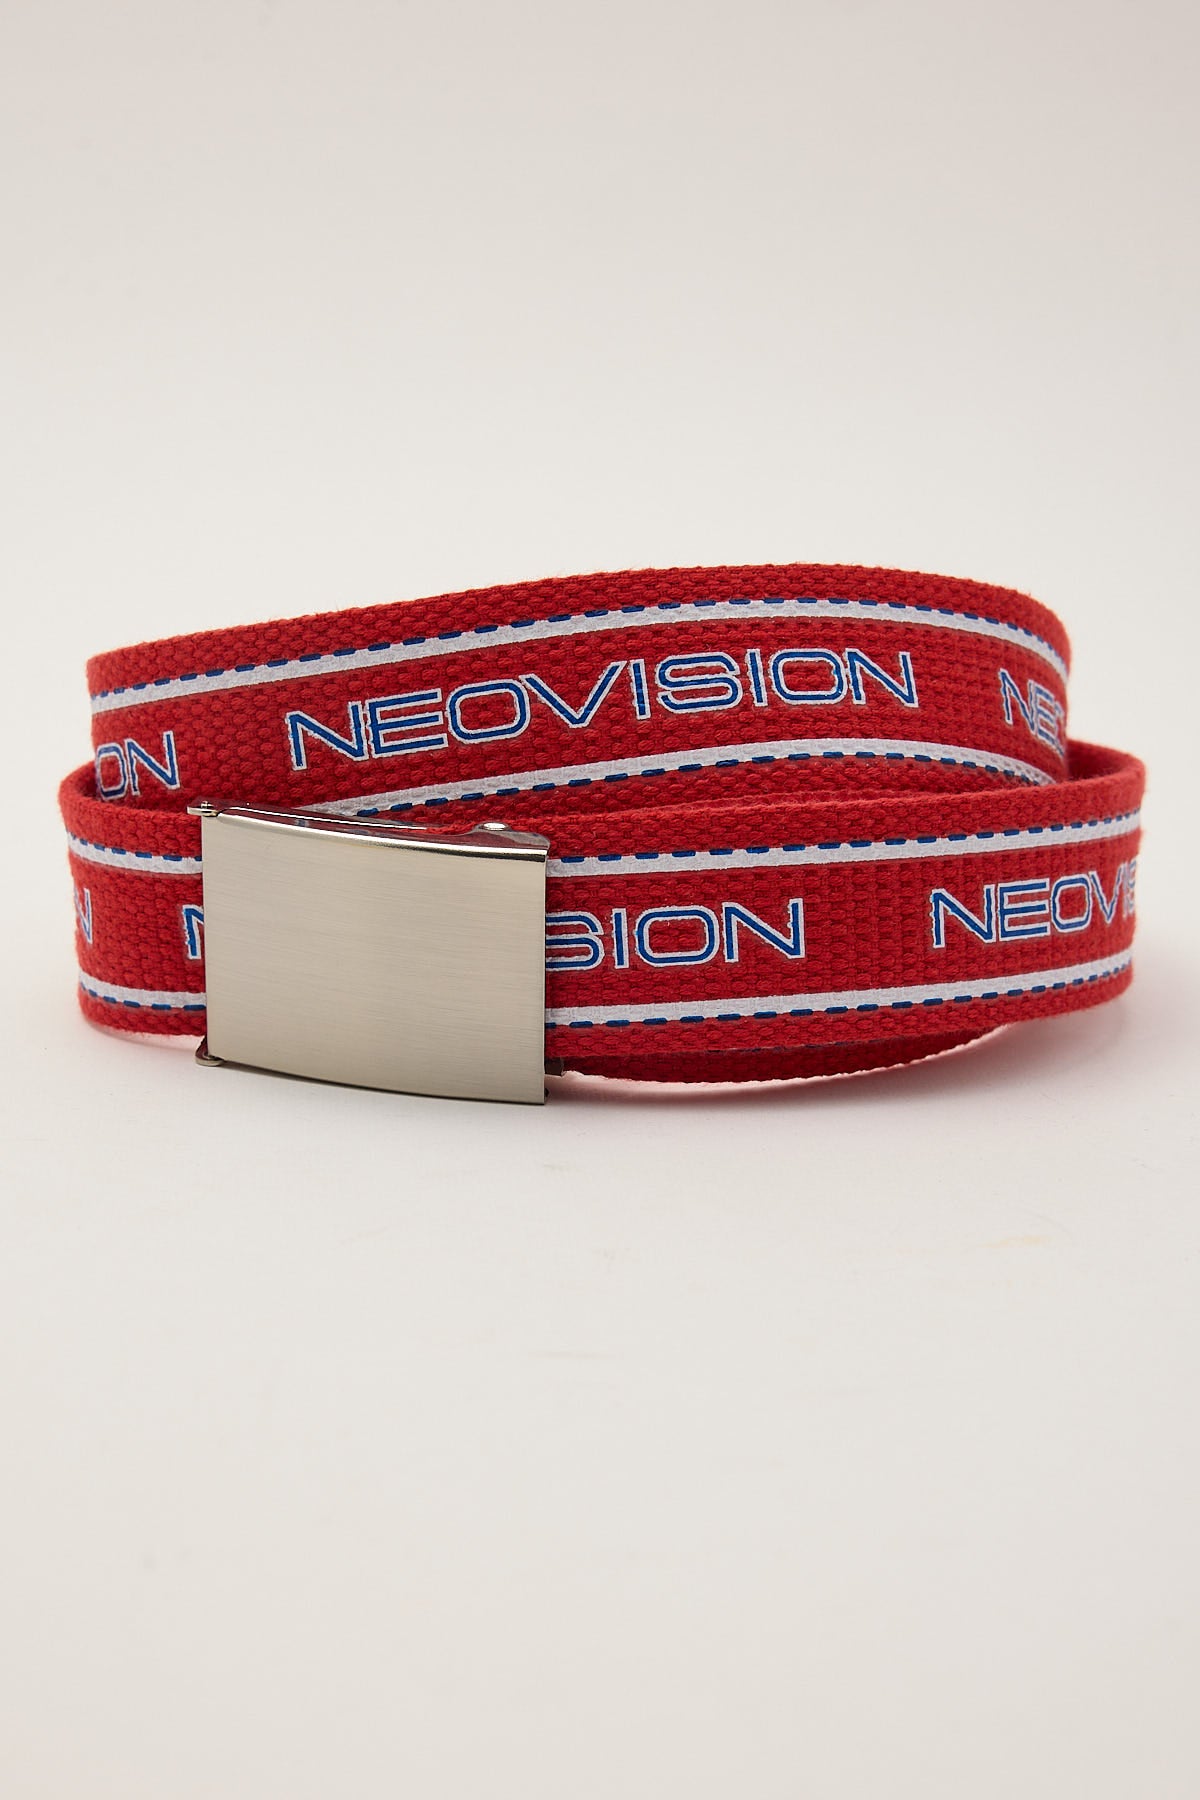 Neovision Streetz Web Belt Red